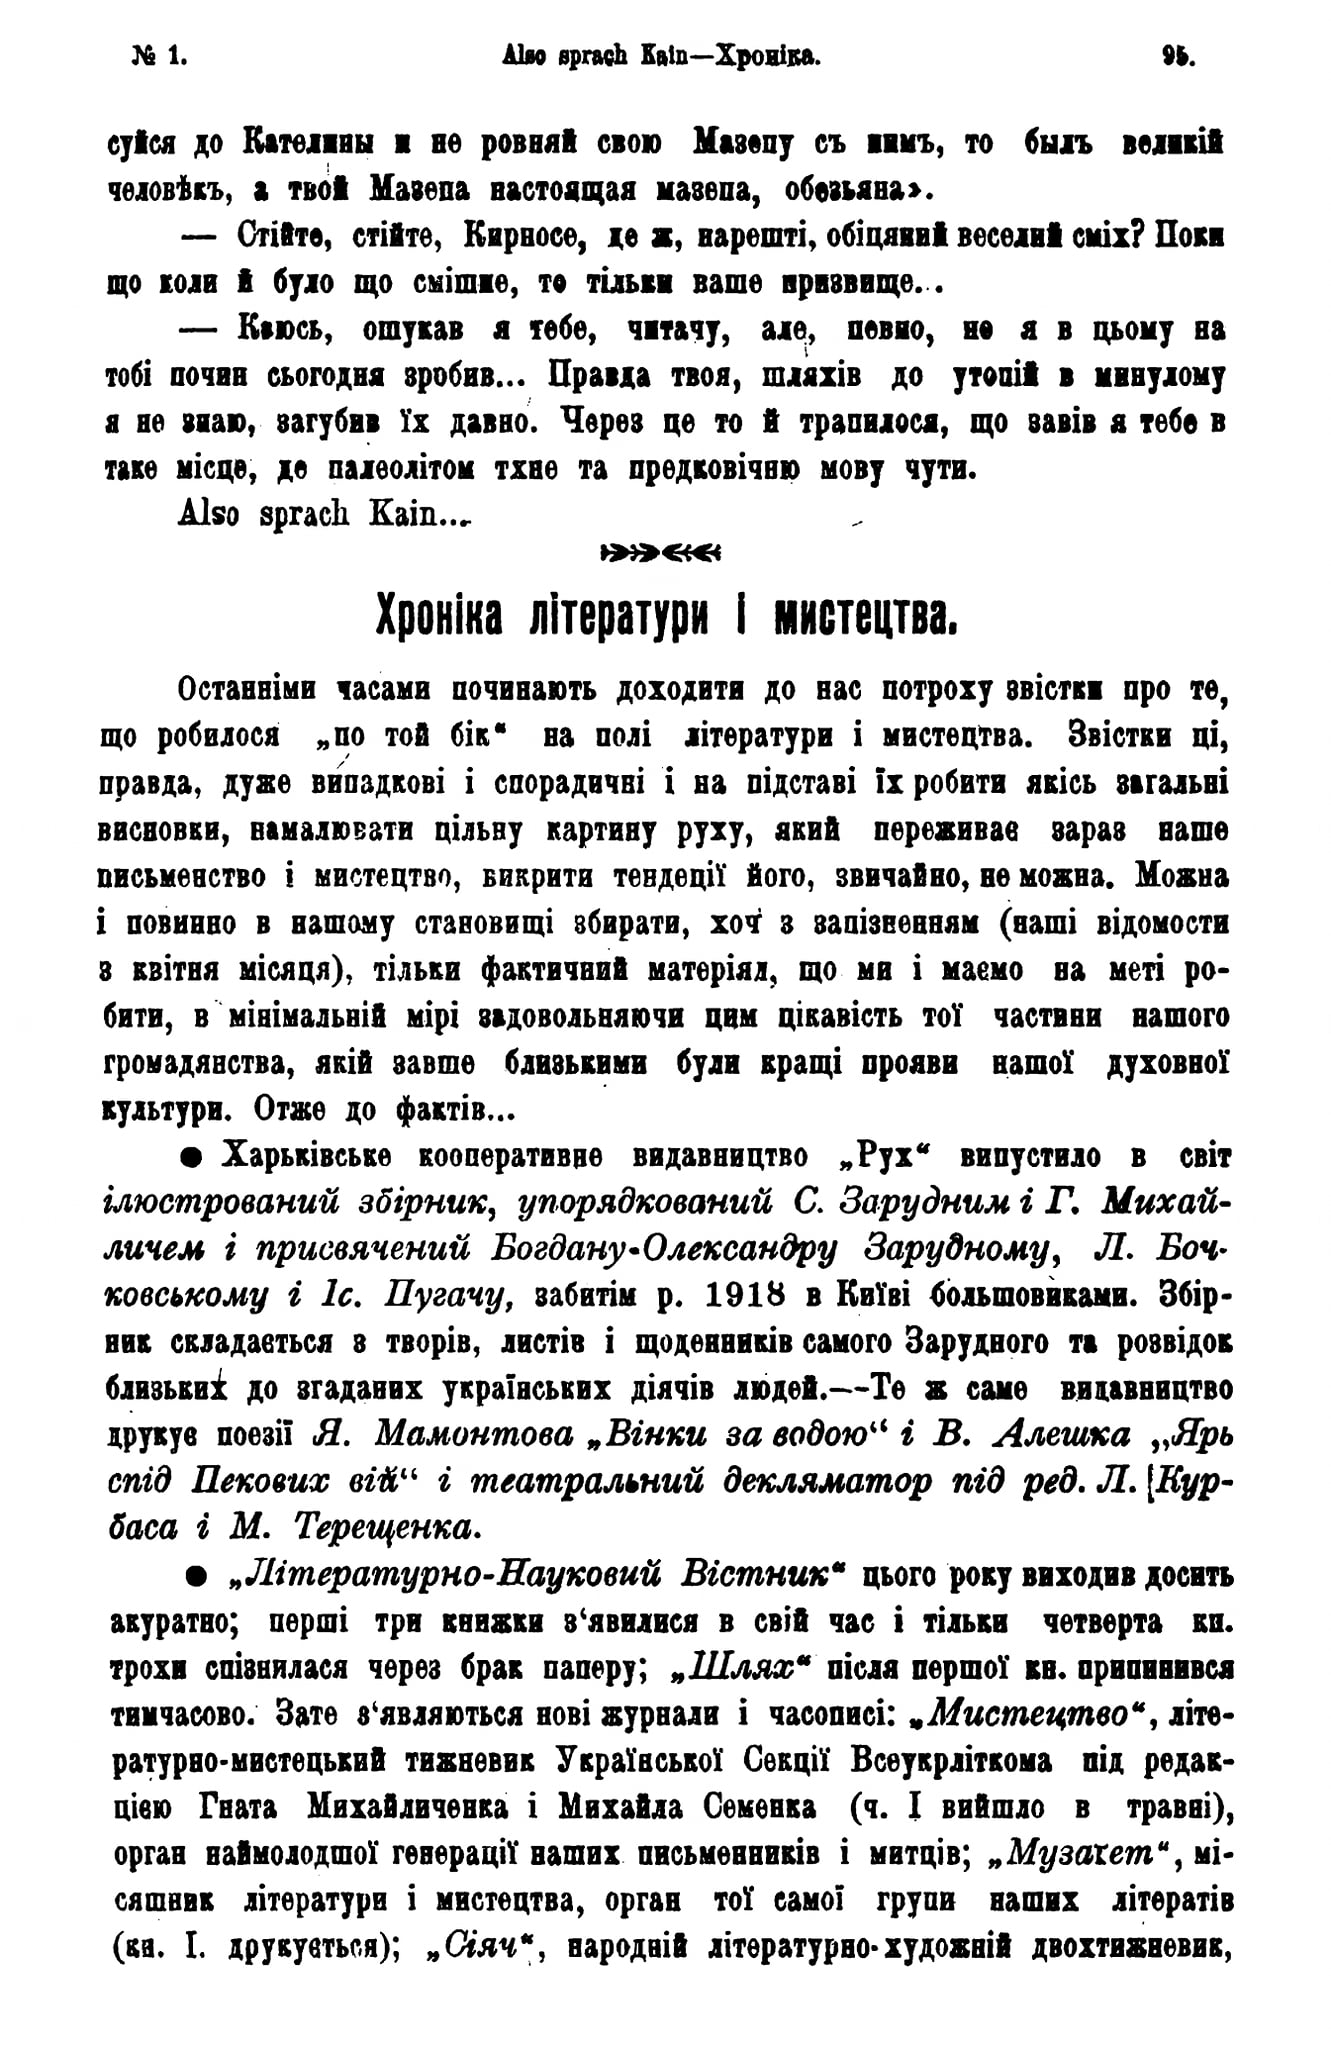 Сторінка з журналу «Січ», №1, 1919 рік